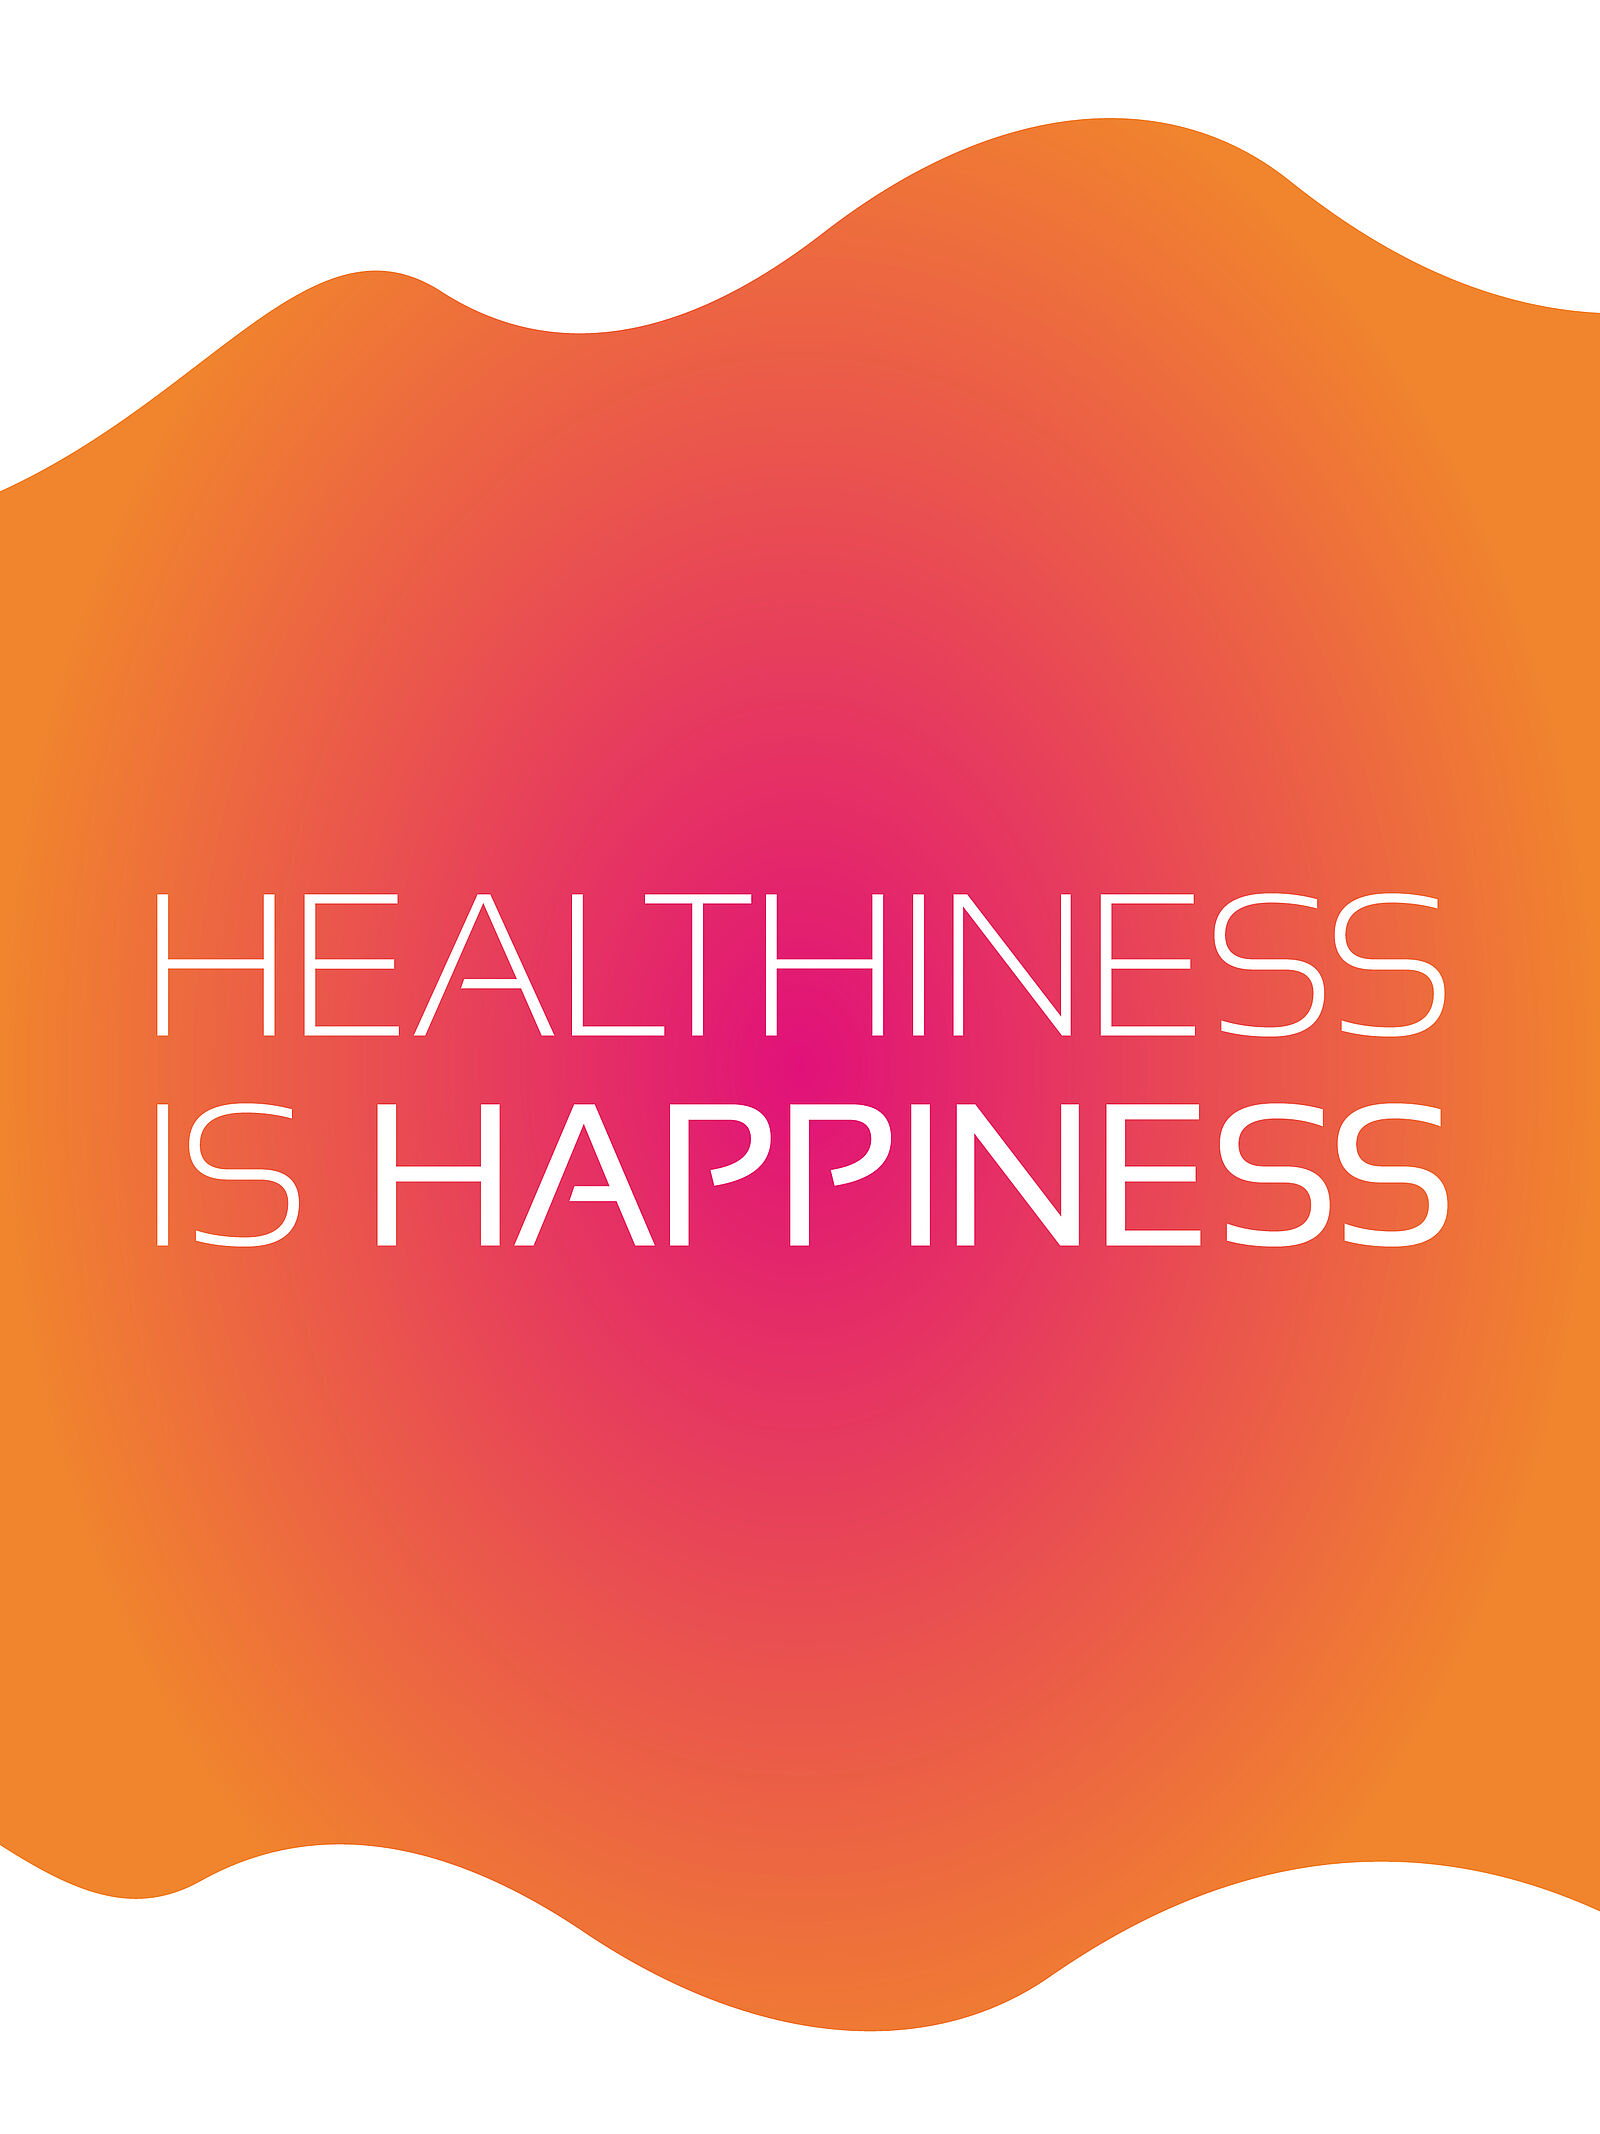 Healthiness is Happiness auf pink orangenem Hintergrund